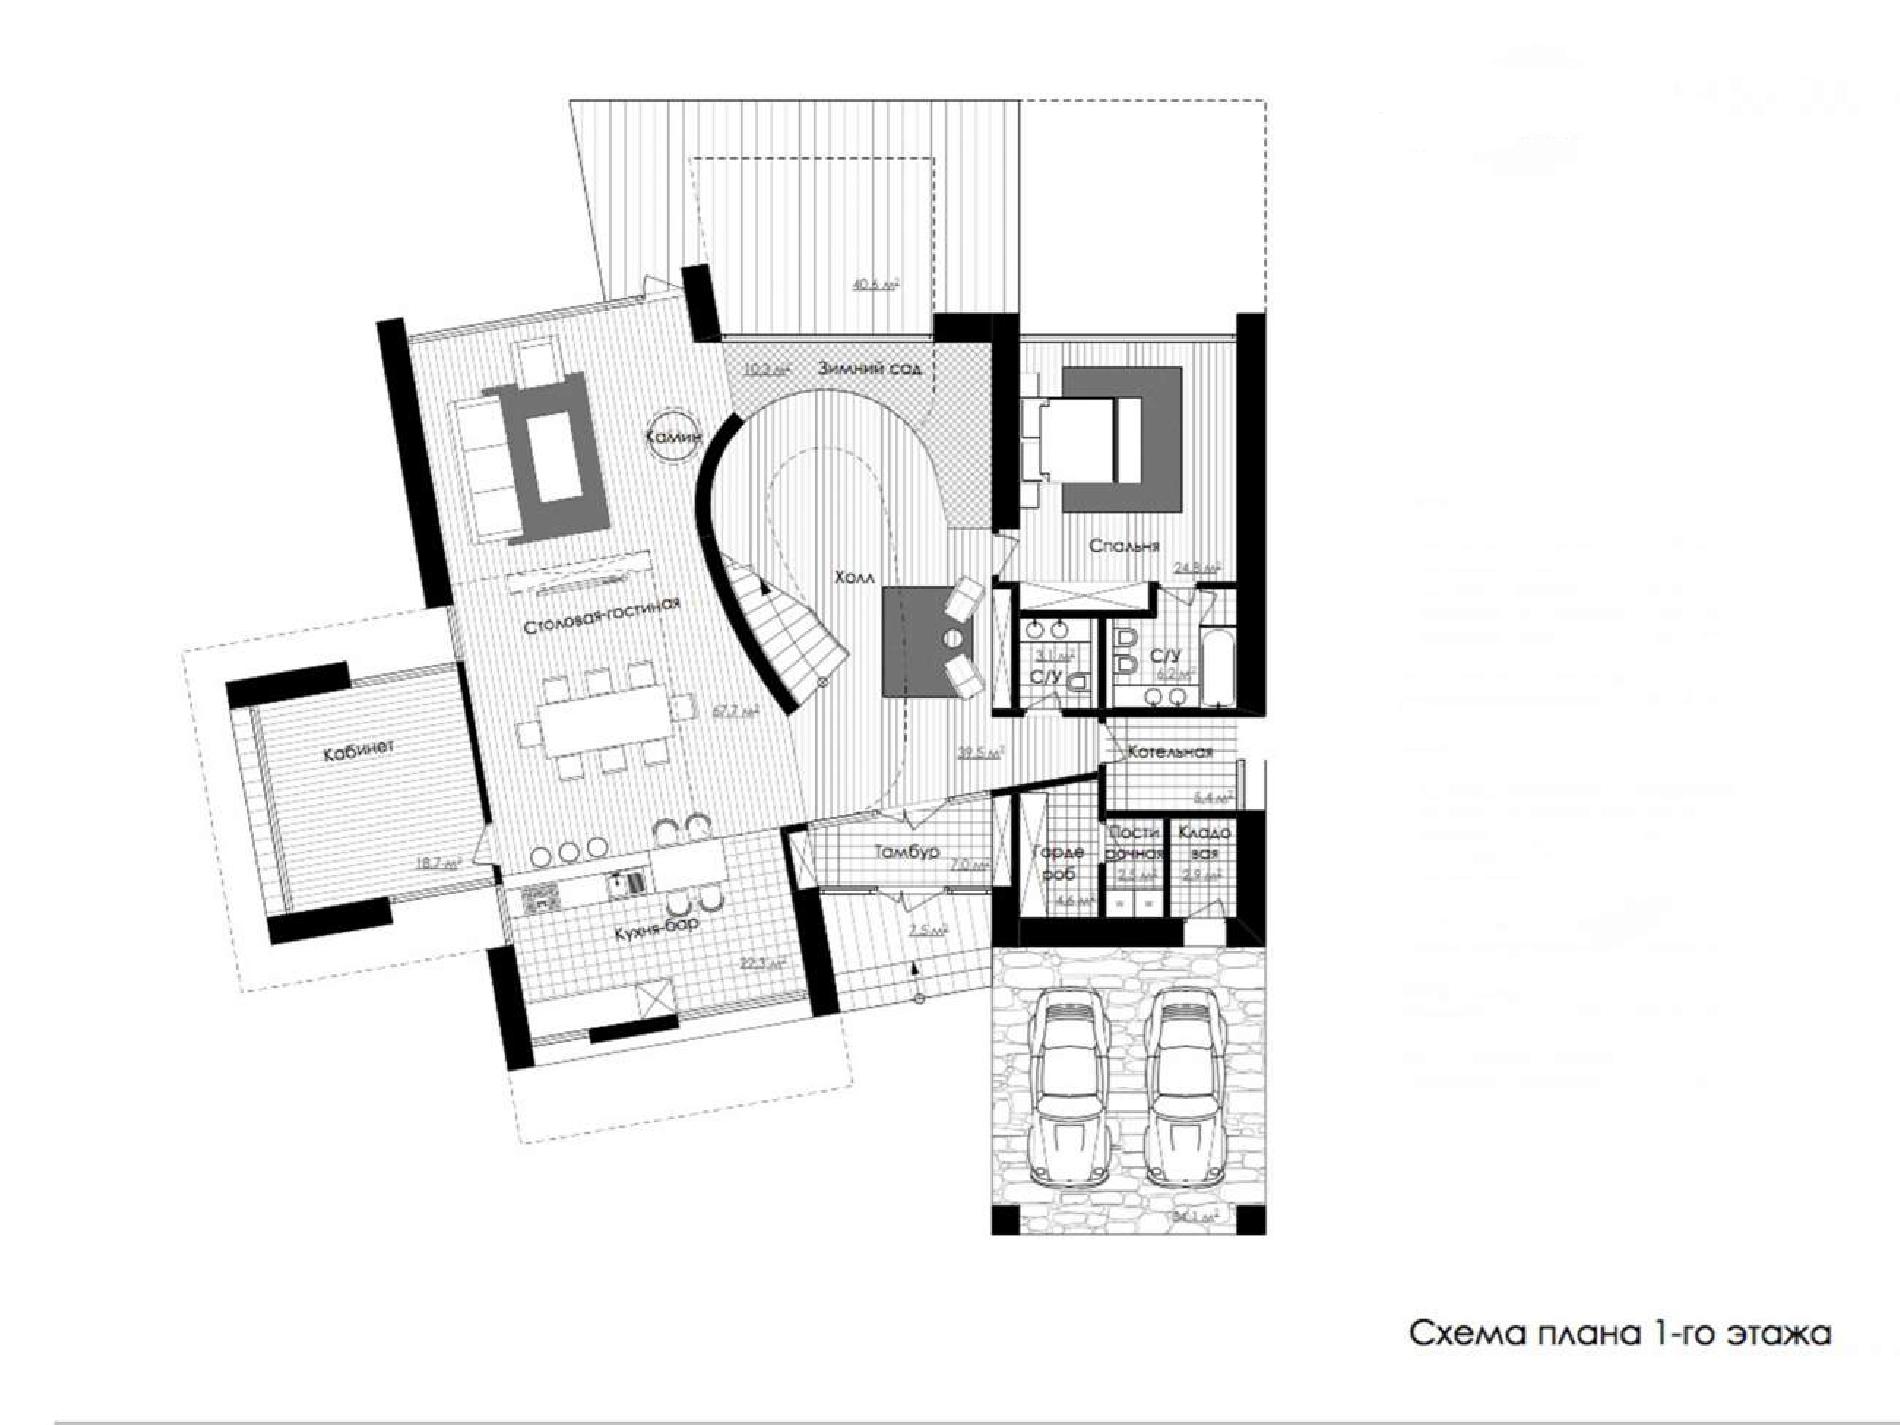 Планировка проекта дома №rh-558 rh-558 (6)p.jpg